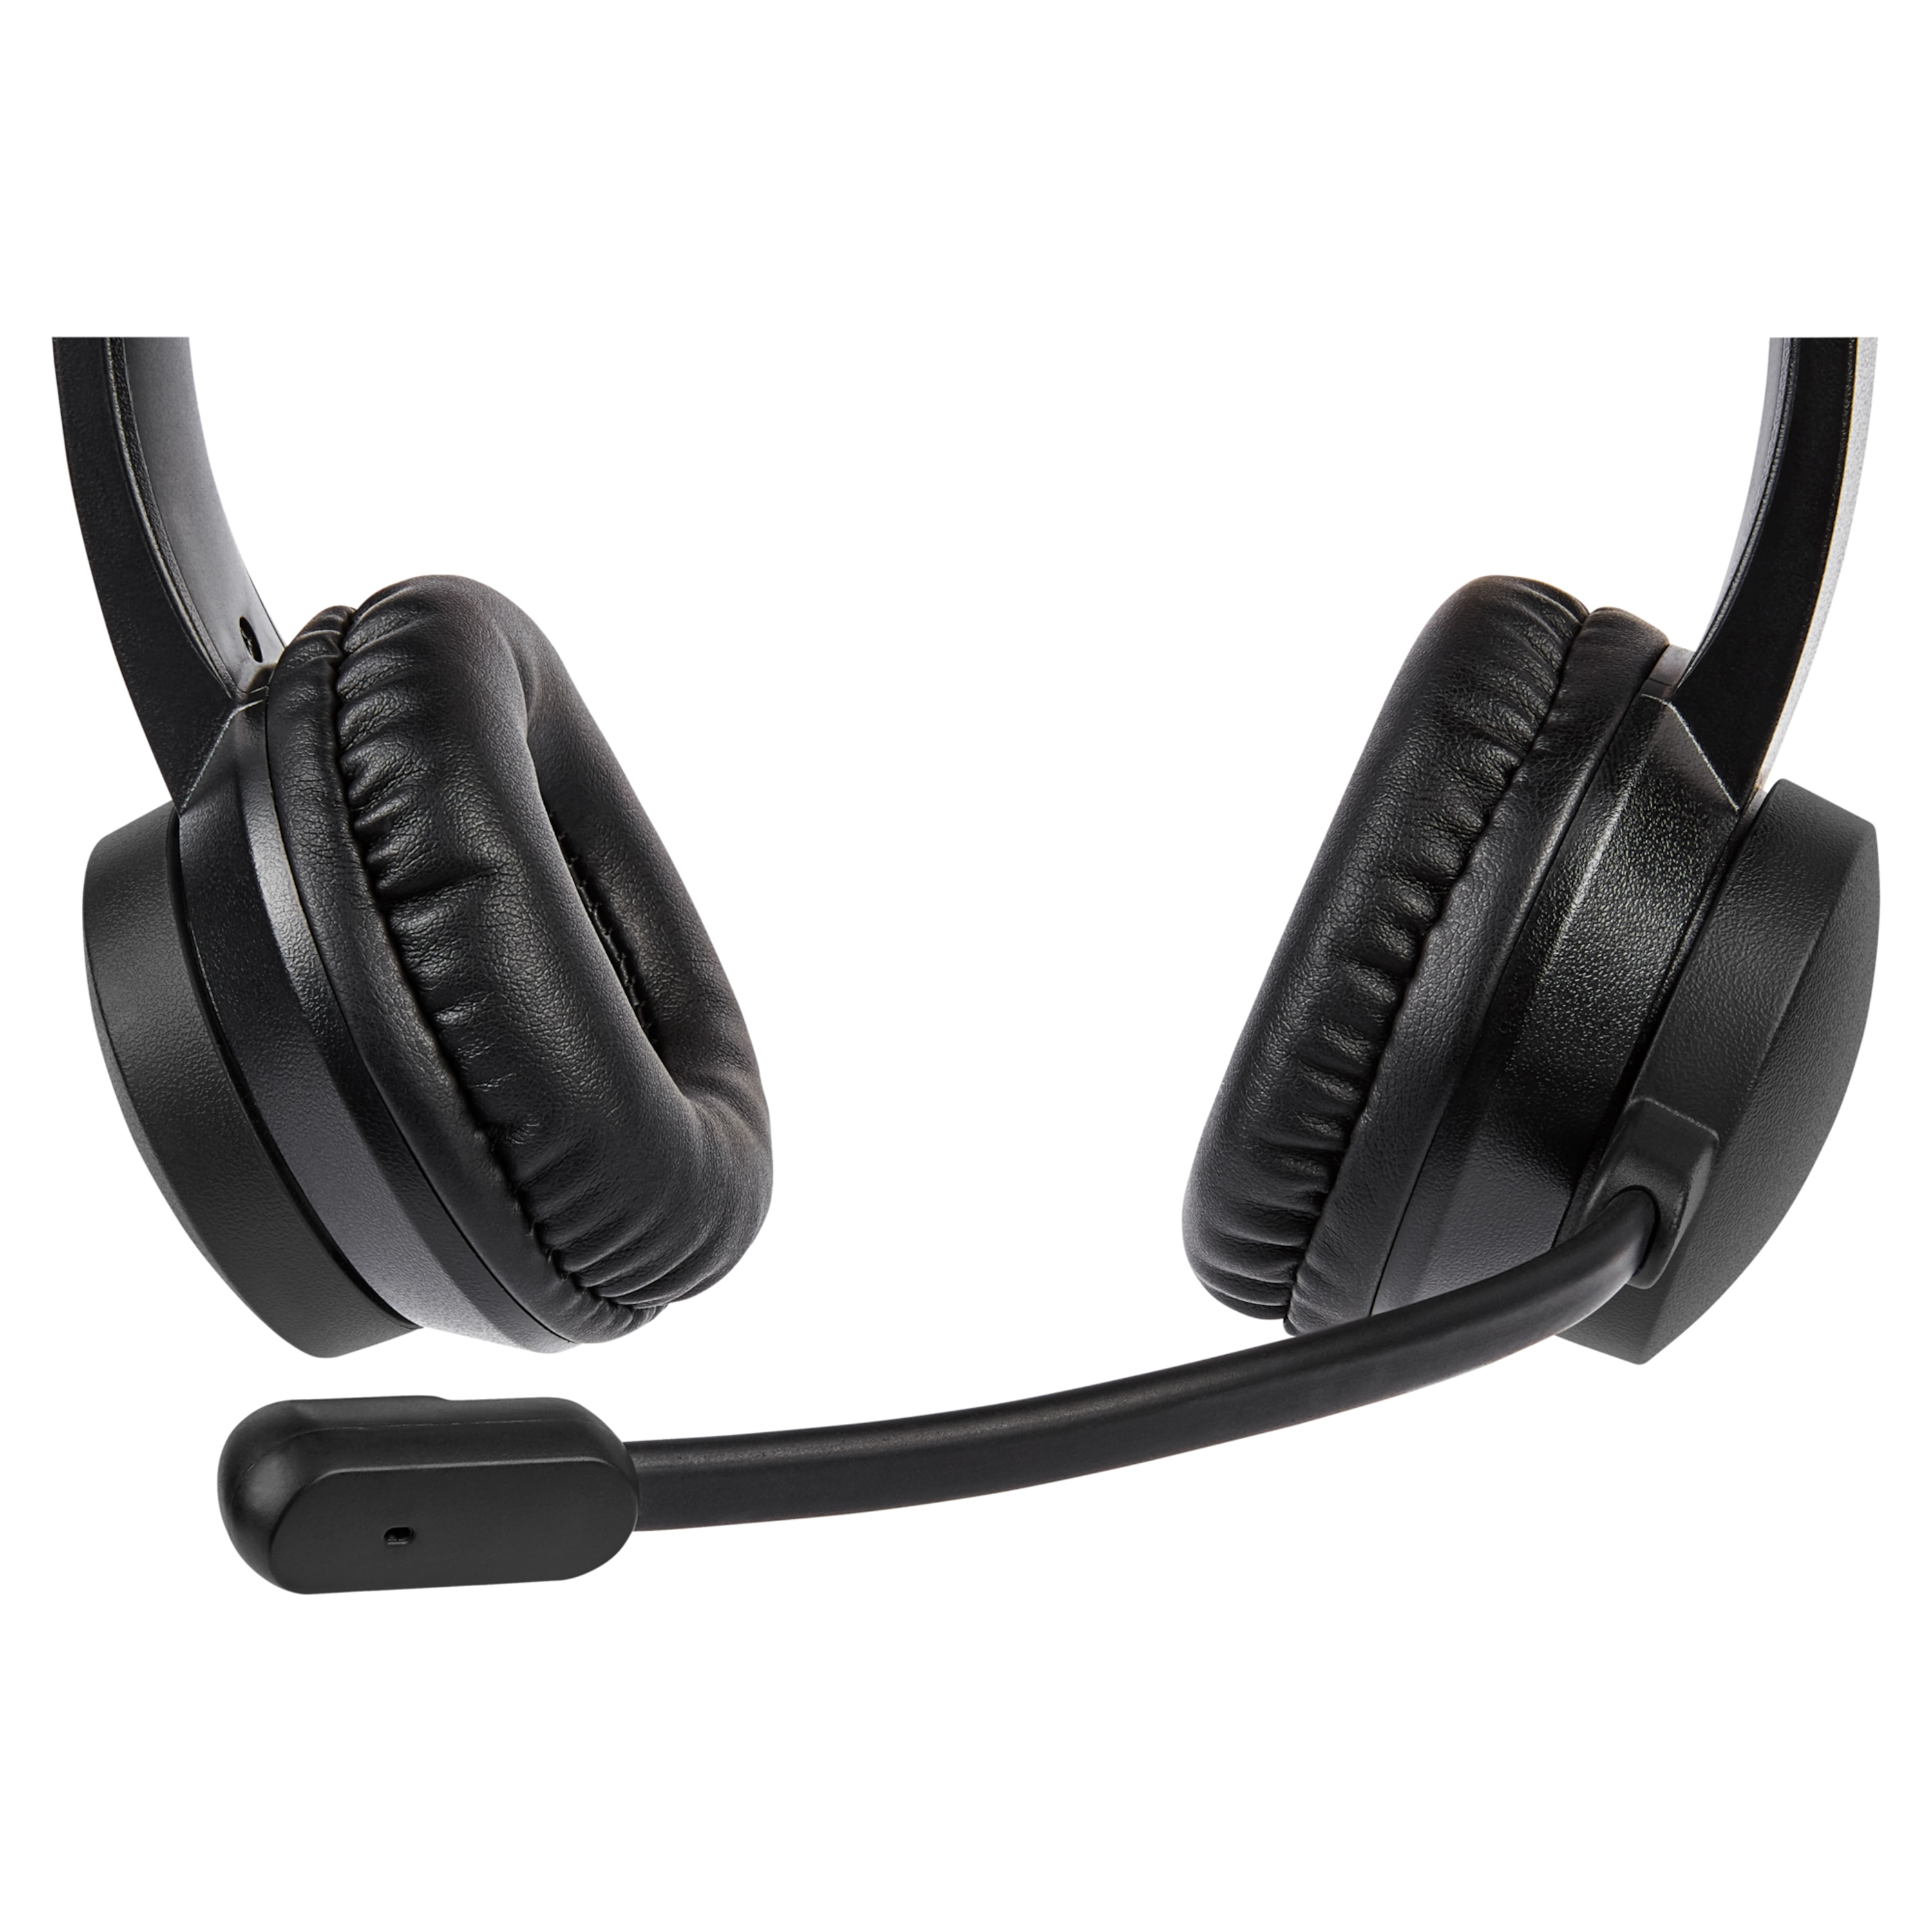 MEDION® LIFE® E83265 USB-Headset, Stereo Kopfhörer für ein perfektes Klangerlebnis, integriertes Mikrofon mit glasklarer Tonaufnahme, pratkischer Lautstärkeregler am Kabel, leicht und bequem, Plug & Play, für PCs und Notebooks (B-Ware)